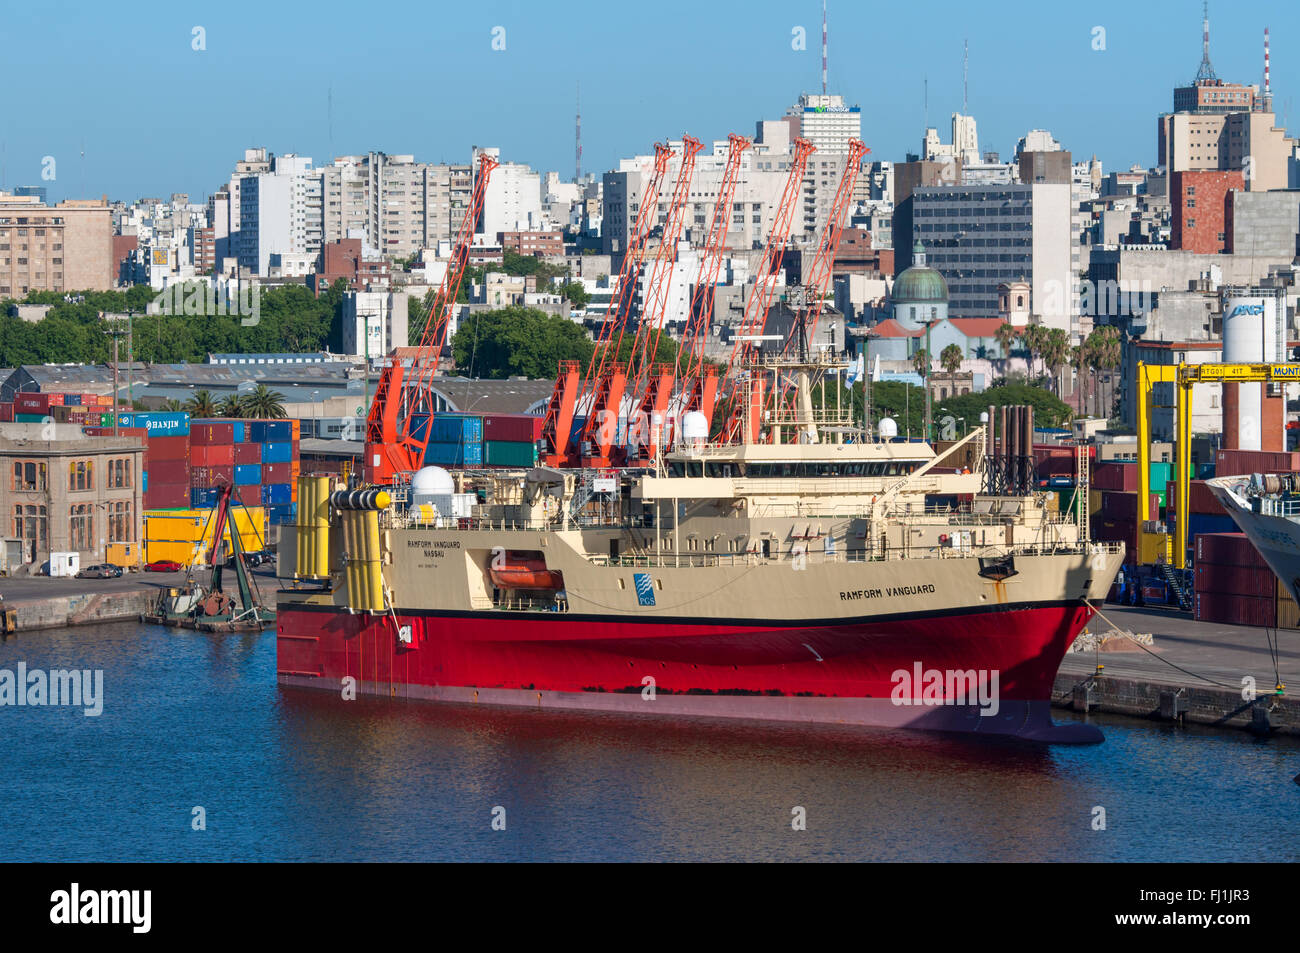 Navire de recherche et d'enquête Ramform Vanguard dans le port de Montevideo, Uruguay. Banque D'Images